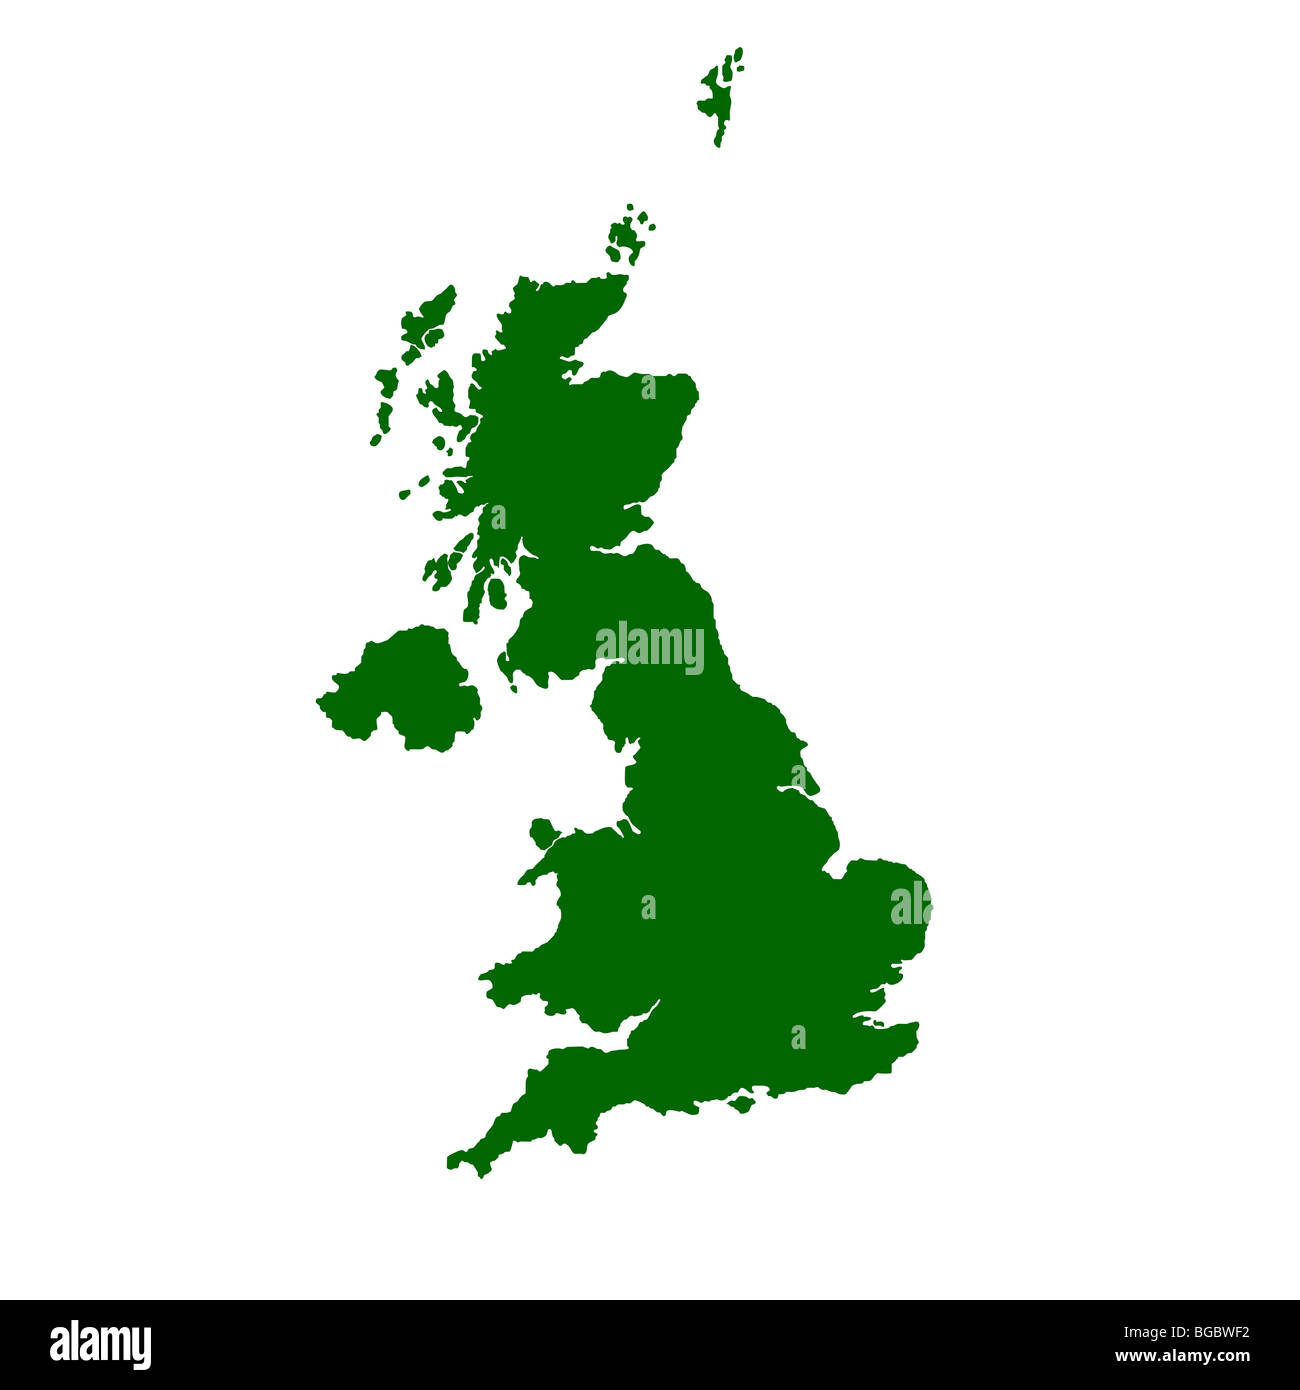 Isolierte Karte des Vereinigten Königreichs von England, Schottland, Wales und Nordirland. Stockfoto